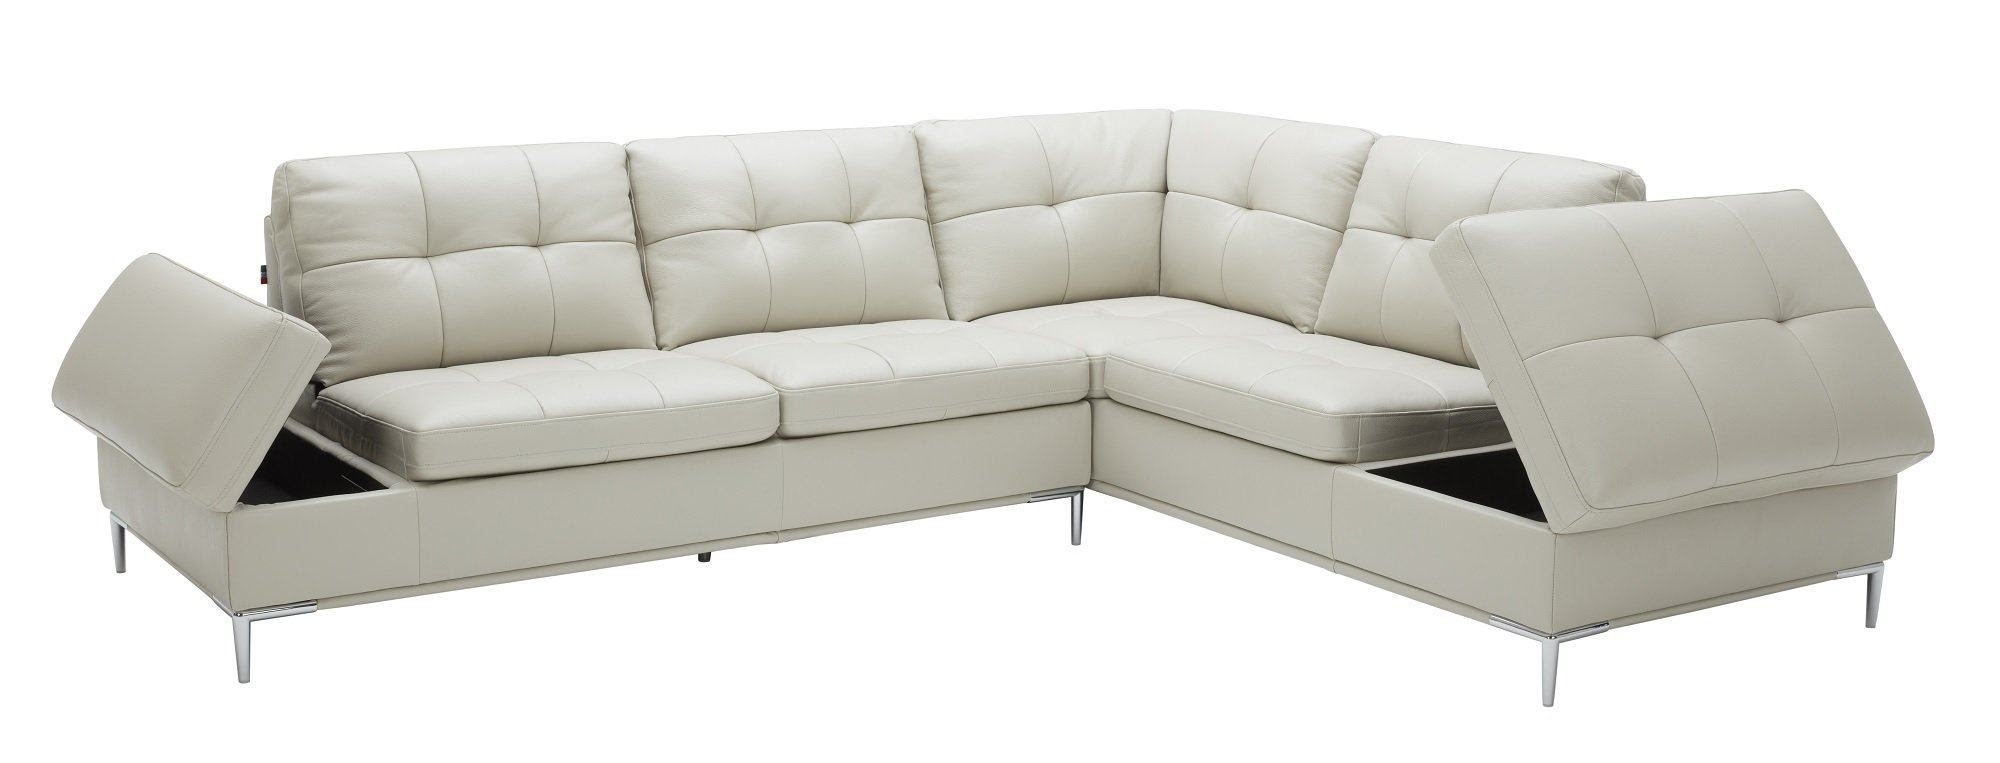 Leonardo Silver Gray Sectional Sofa w/Storage by J&M Furniture